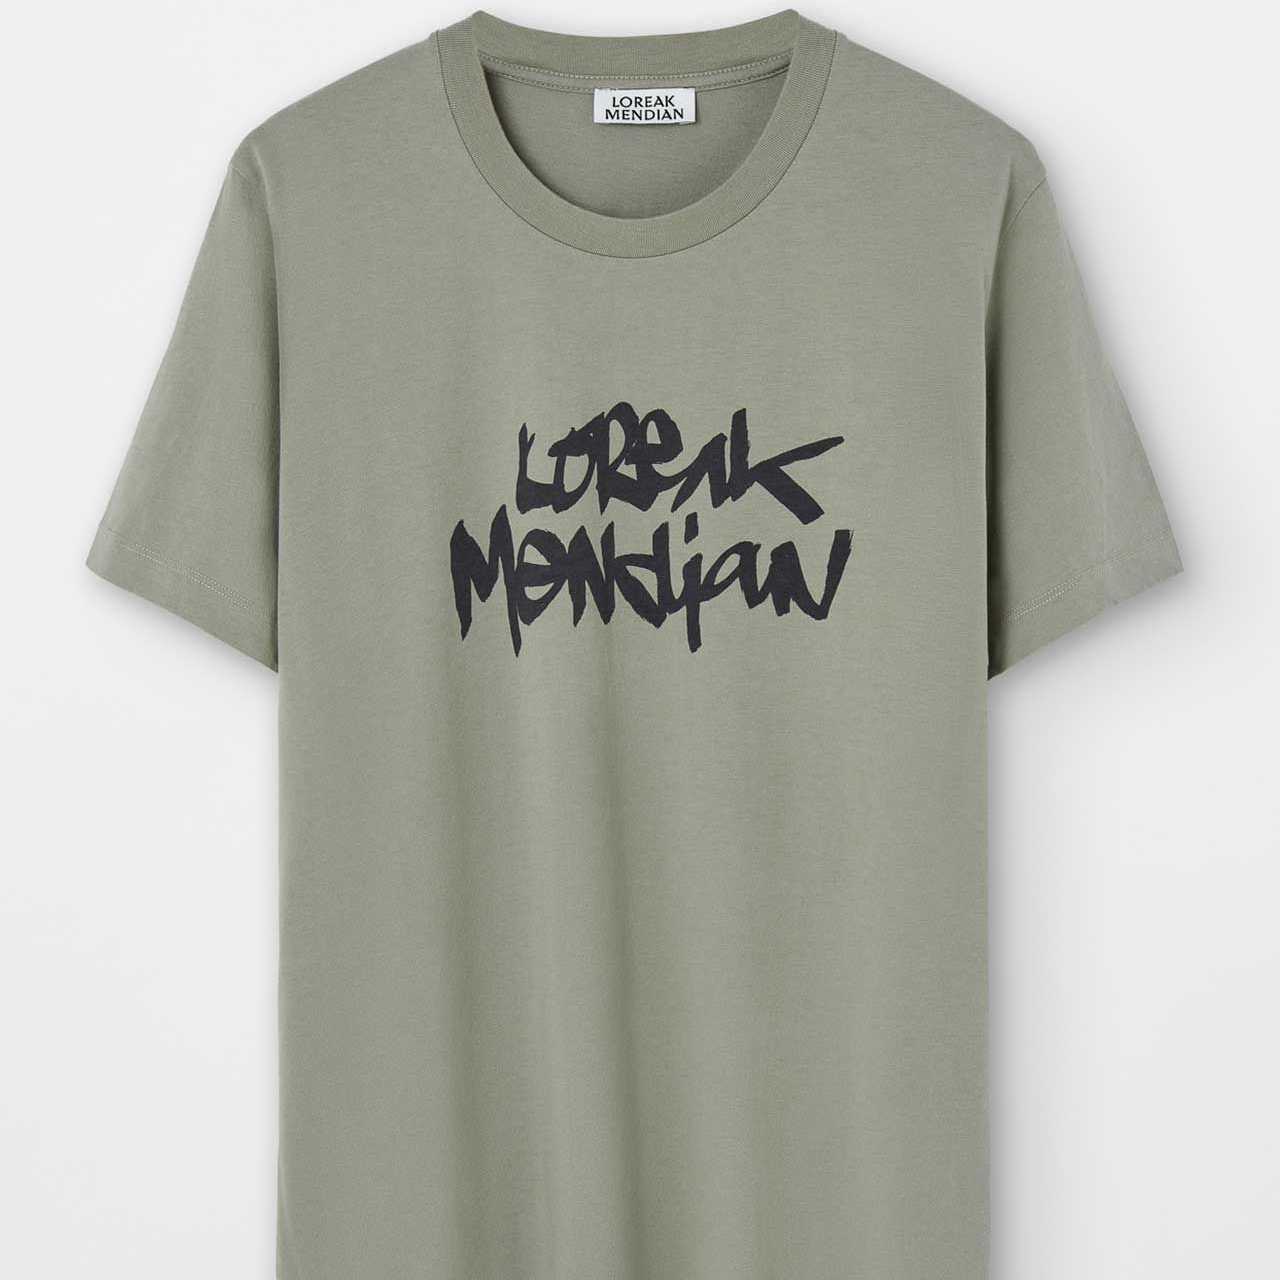 Camiseta Loreak Mendian Taggy Khaki